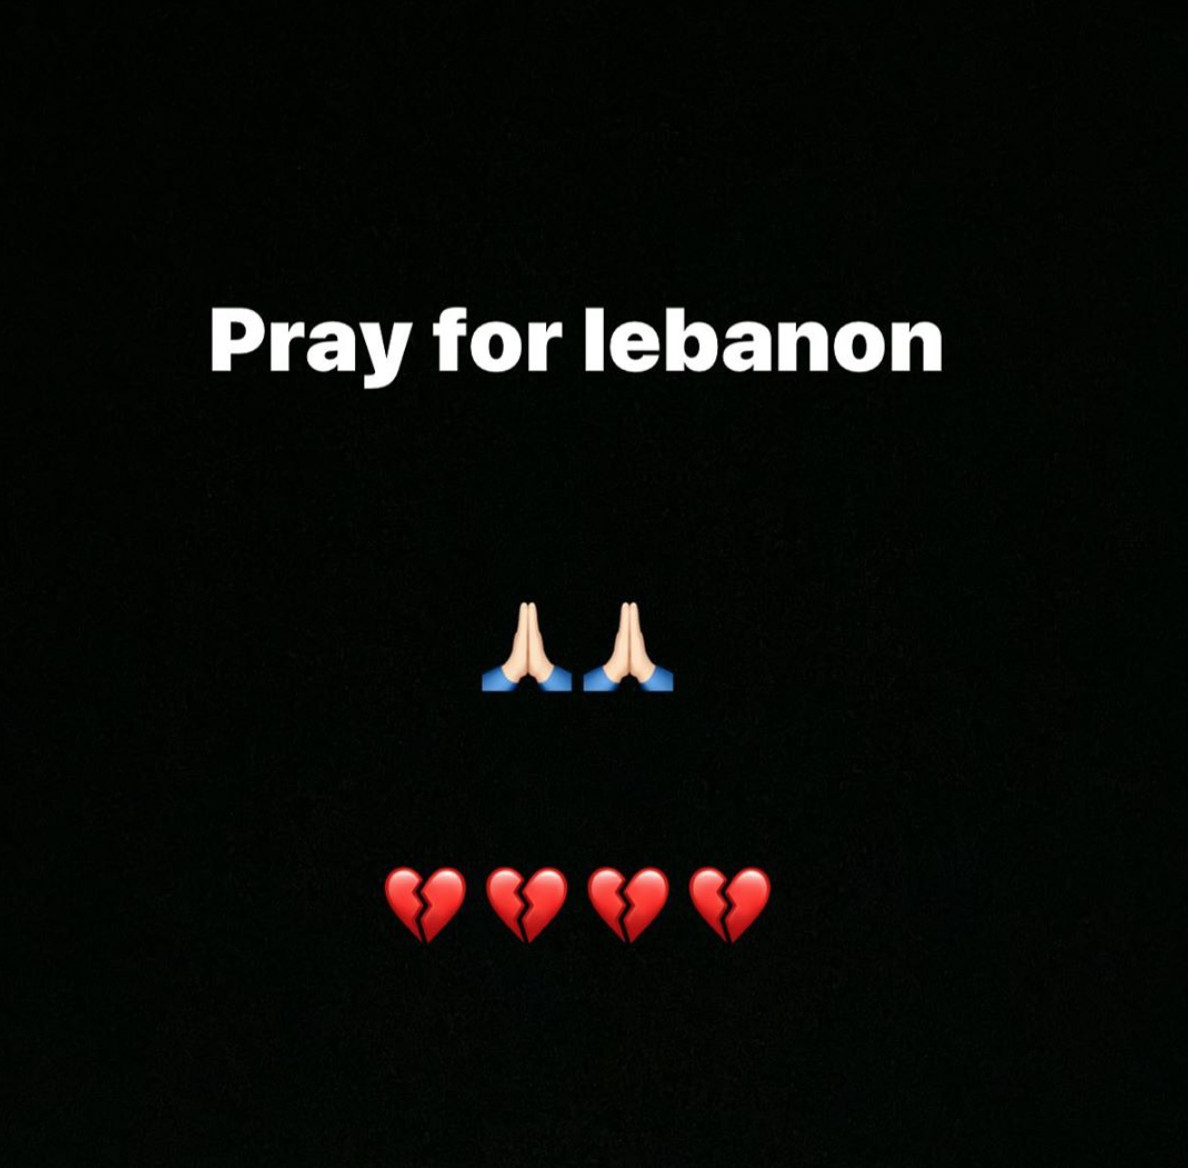 Daniella Semaan contra los ataques en Beirut